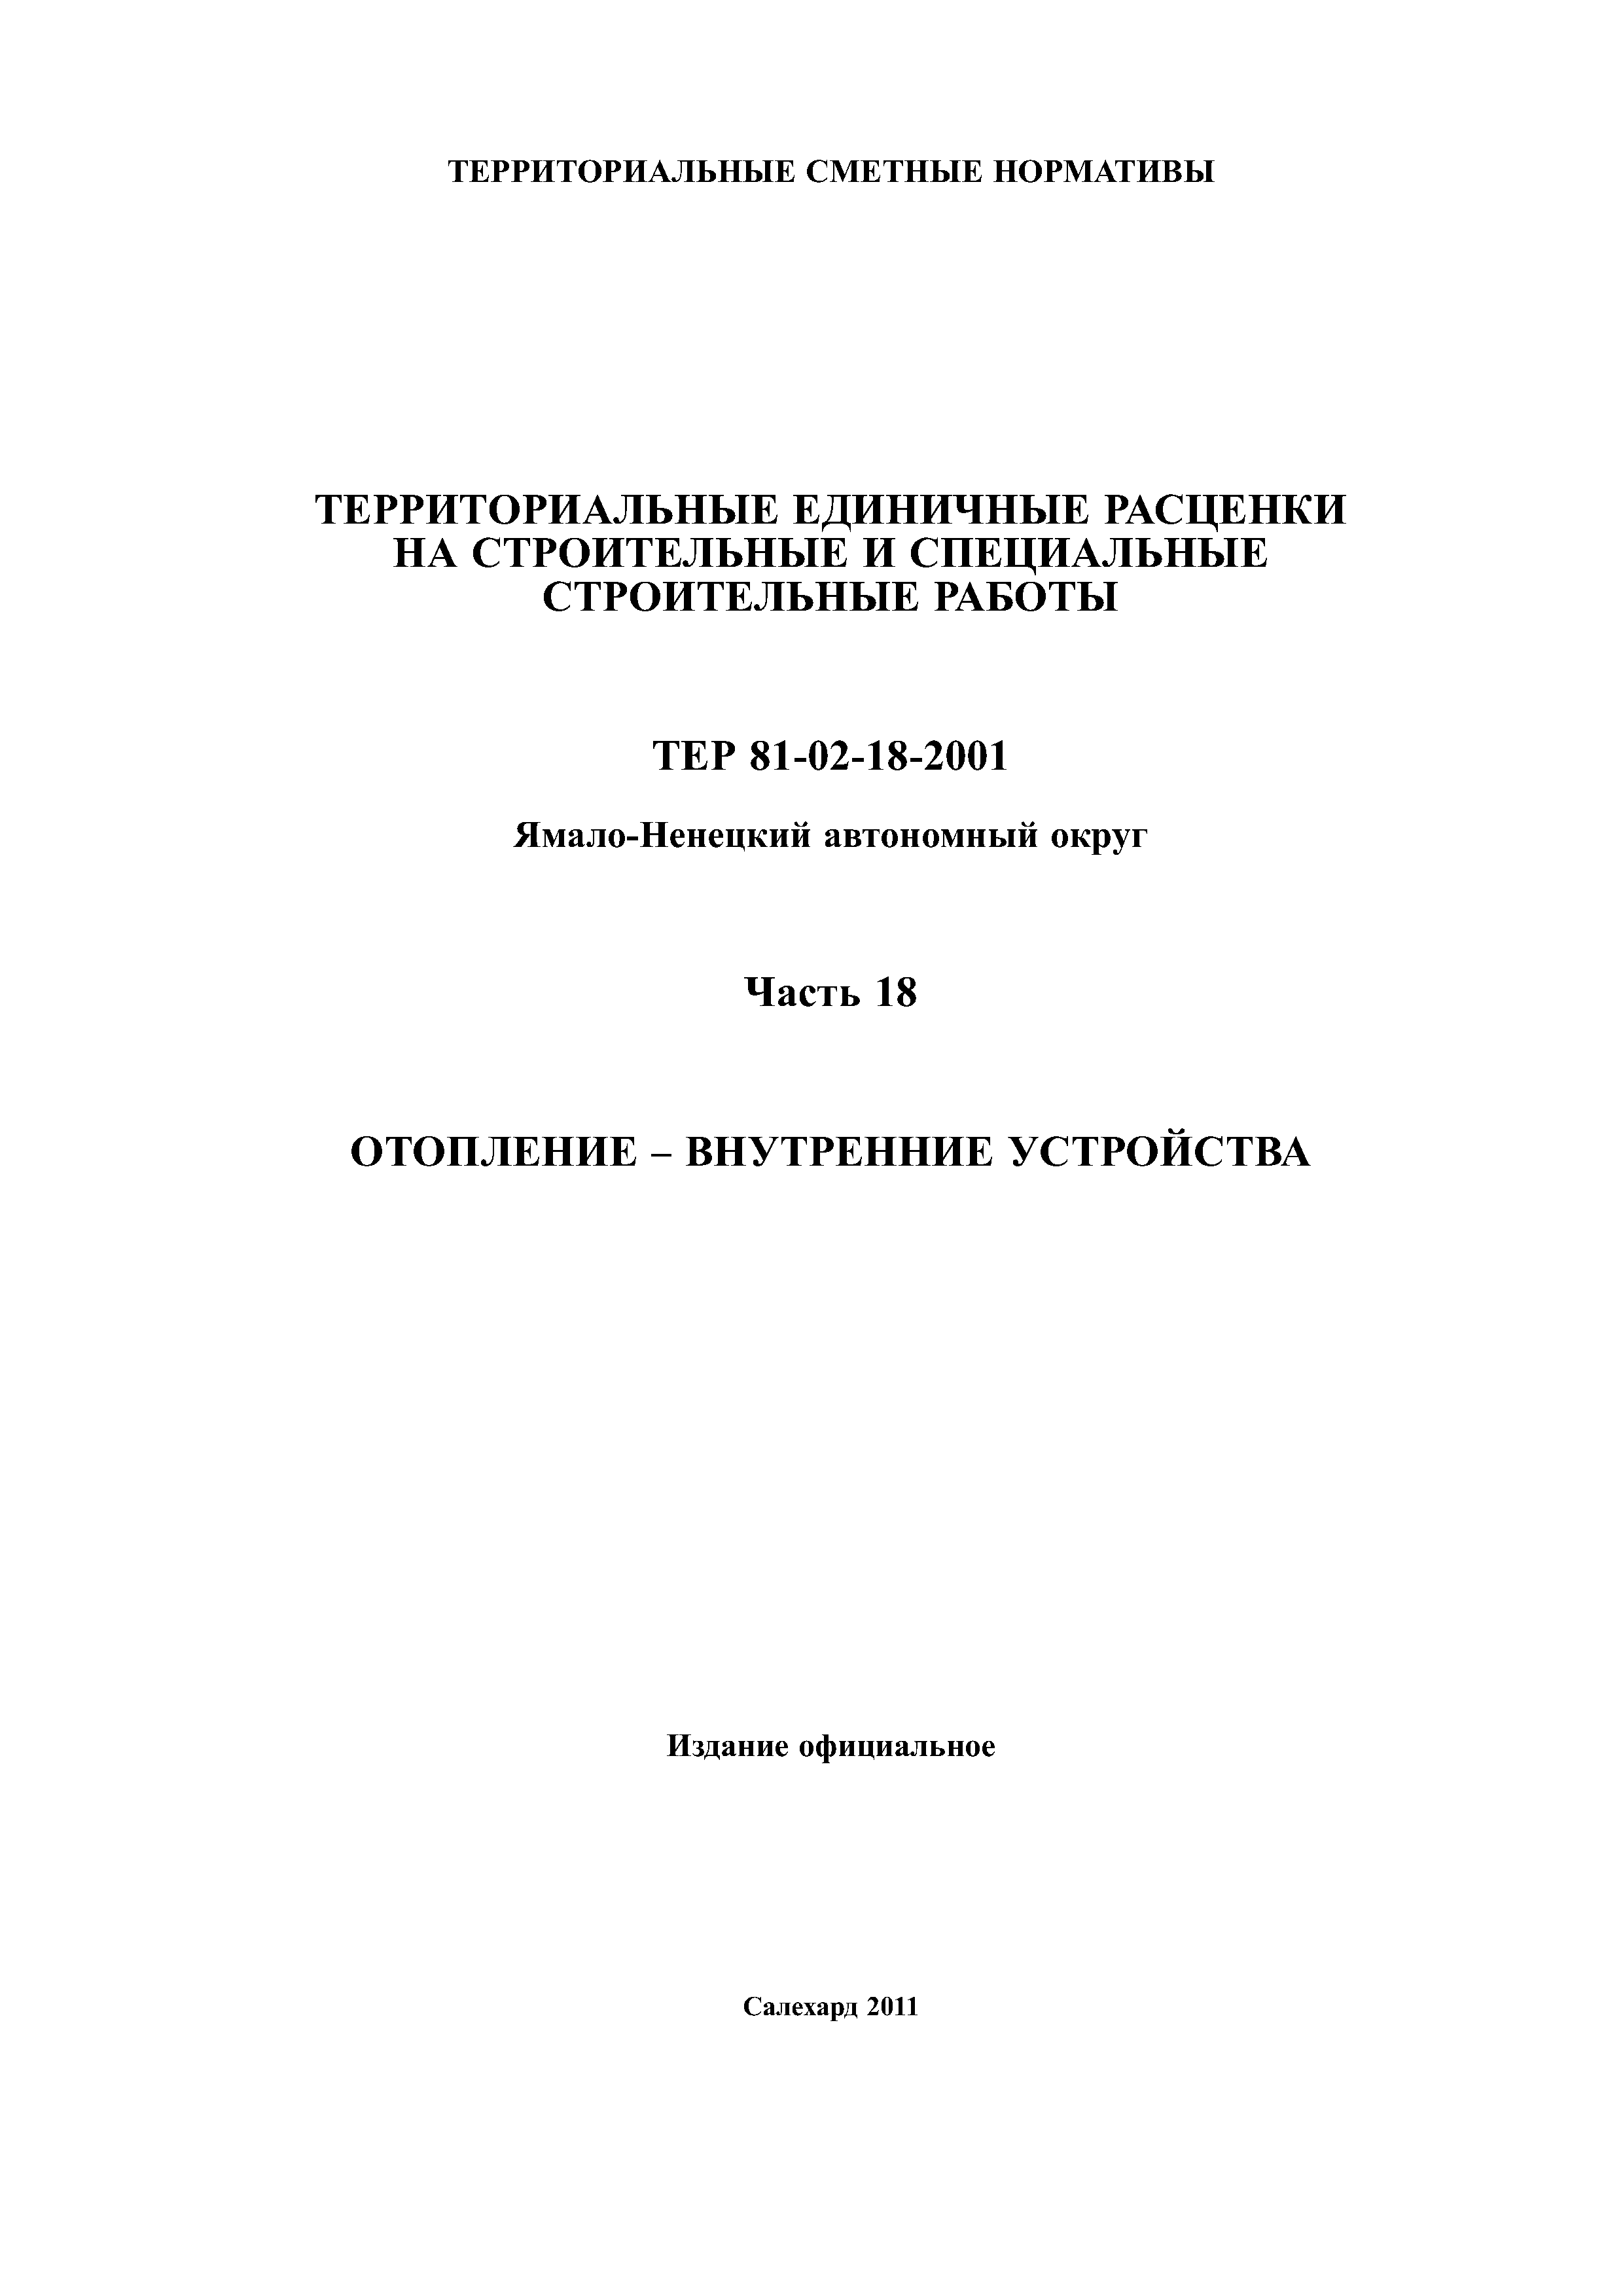 ТЕР Ямало-Ненецкий автономный округ 18-2001